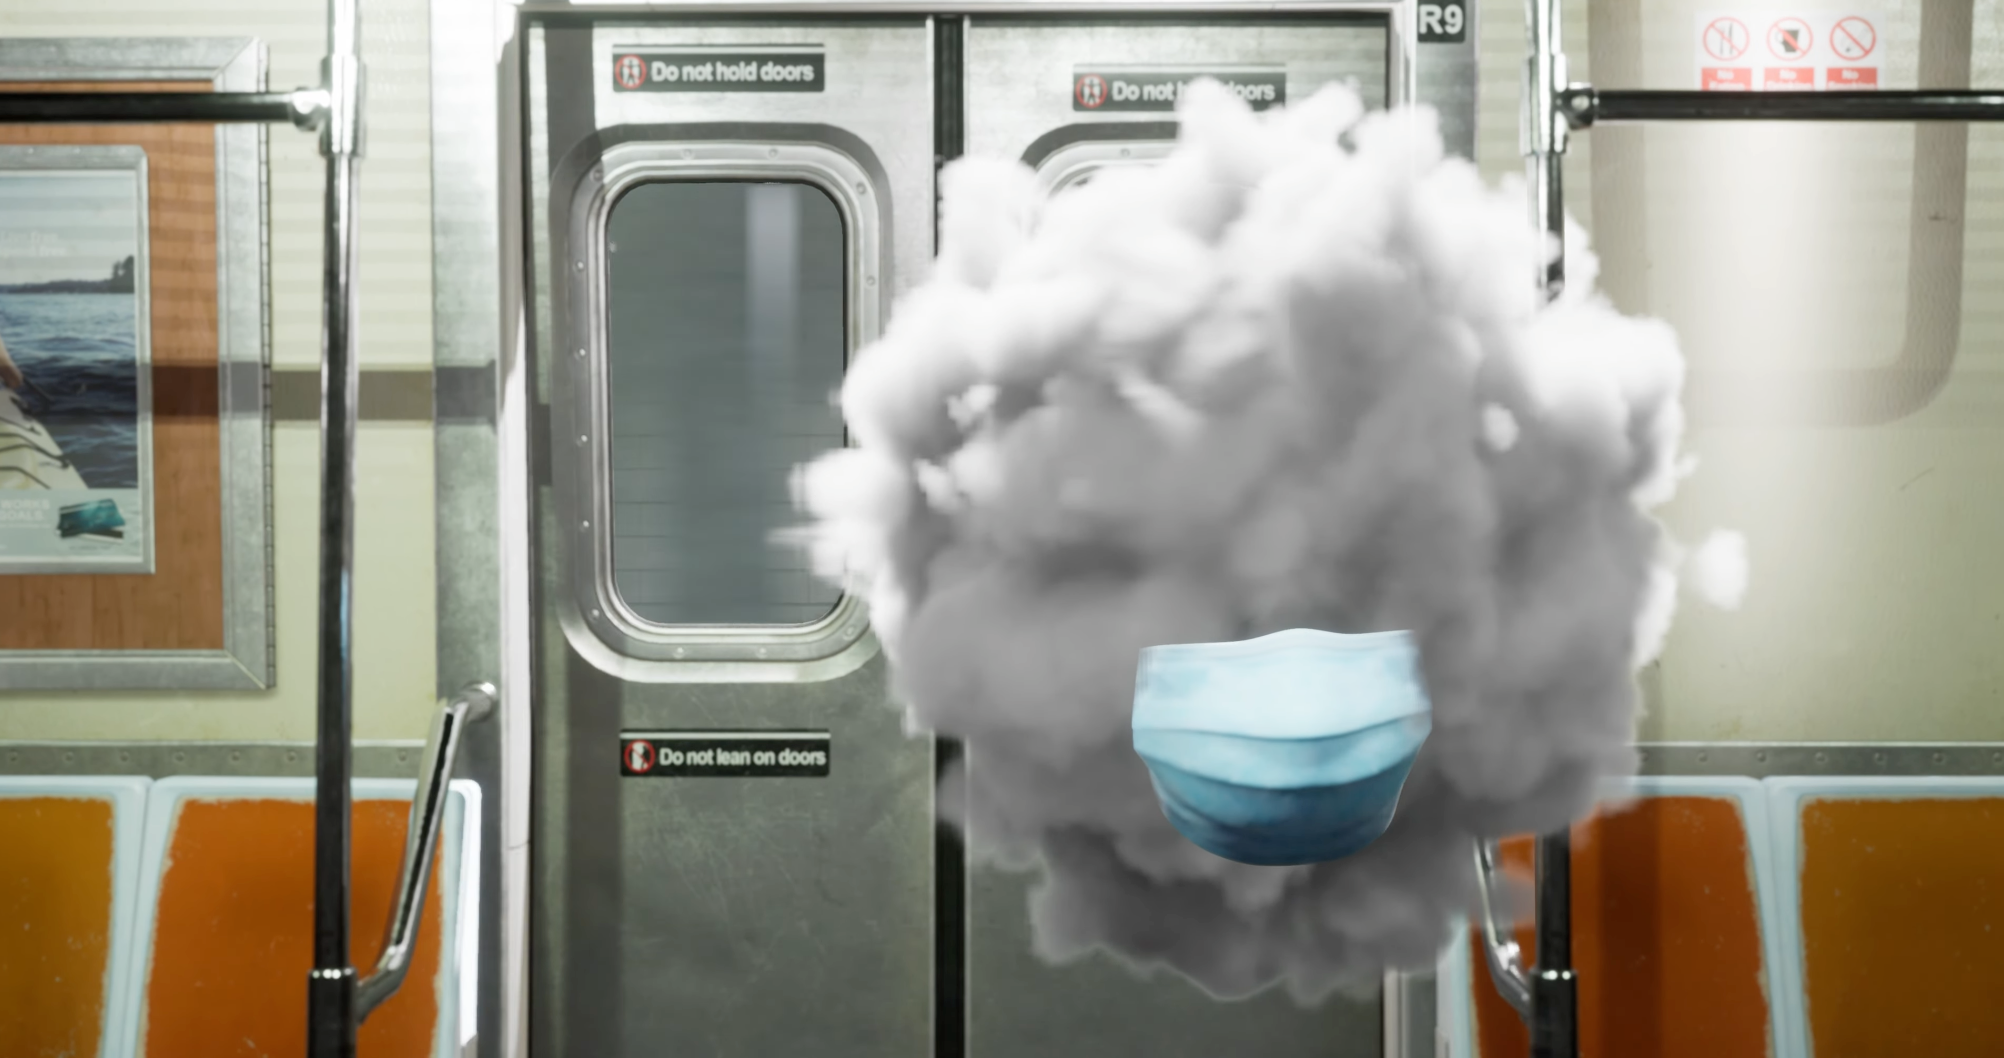 A cloud walks into a subway train Nov 13, 2021